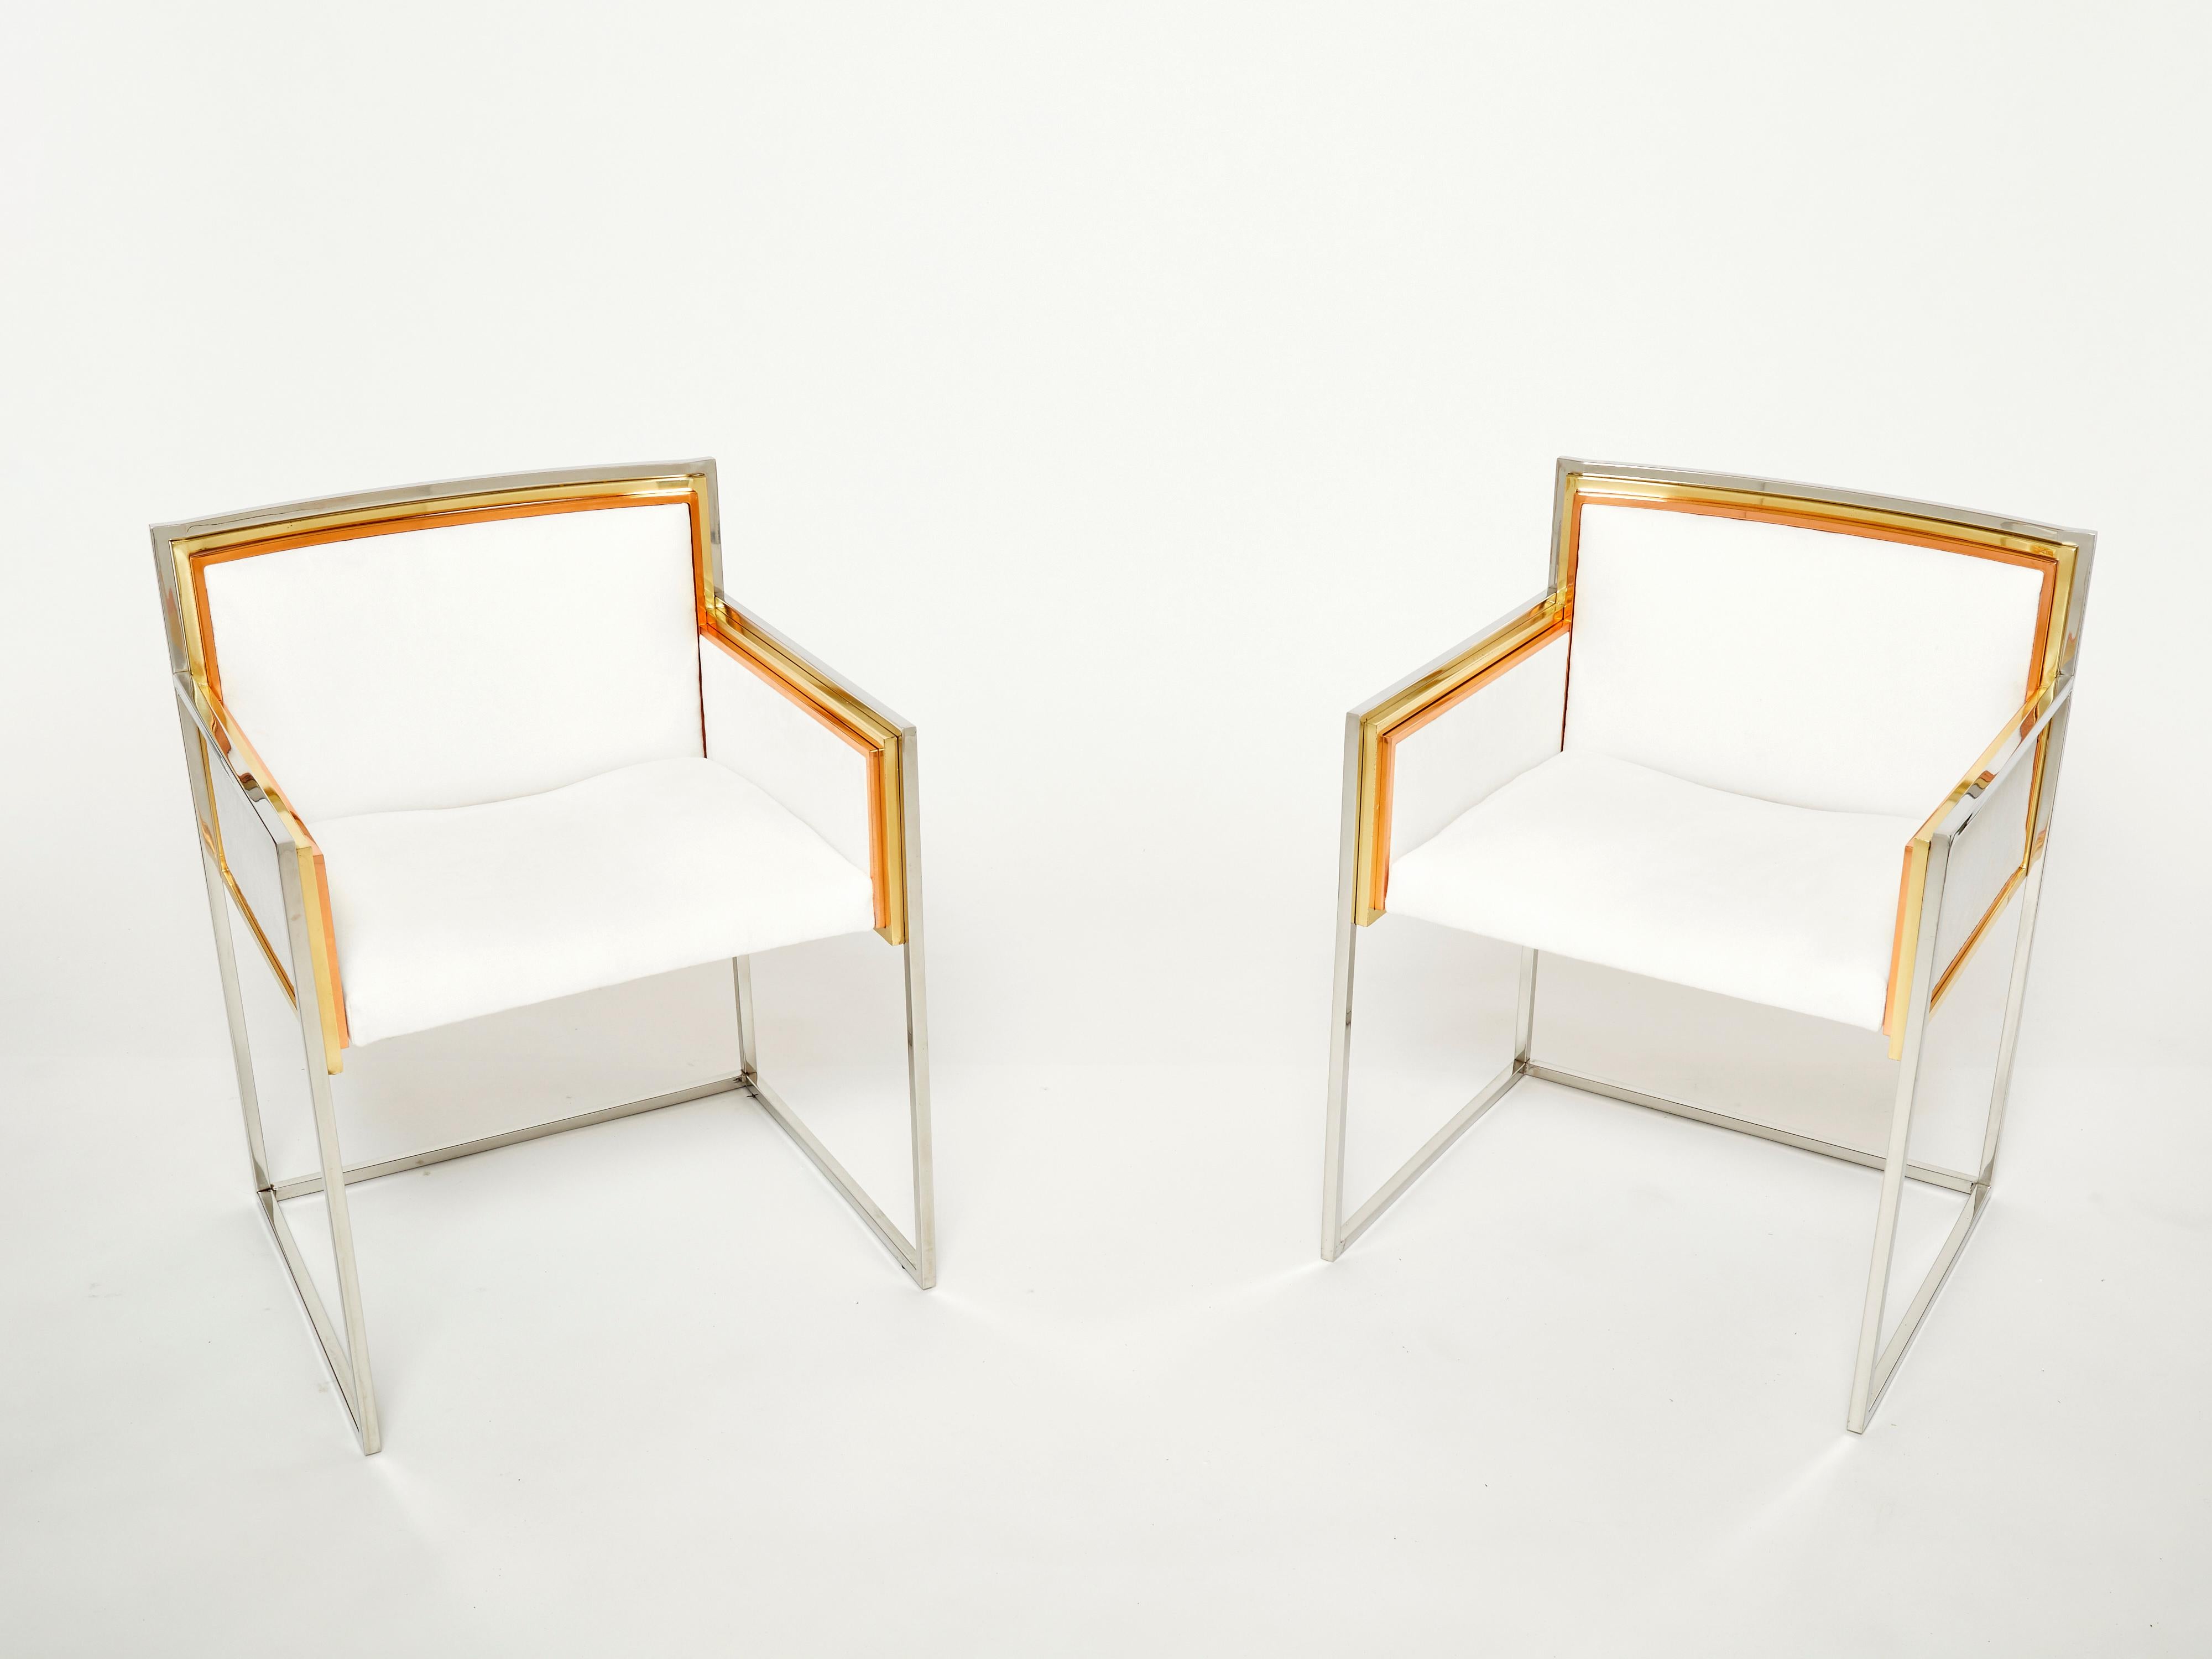 Der weiße Alcantara-Stoff und die Mischung aus Metallen mit Messing-, Kupfer- und Chromschichten bilden das dekorative Gestell dieses schönen und seltenen Sesselpaars, das von Alain Delon entworfen und 1972 von Maison Jansen herausgegeben wurde. Ein